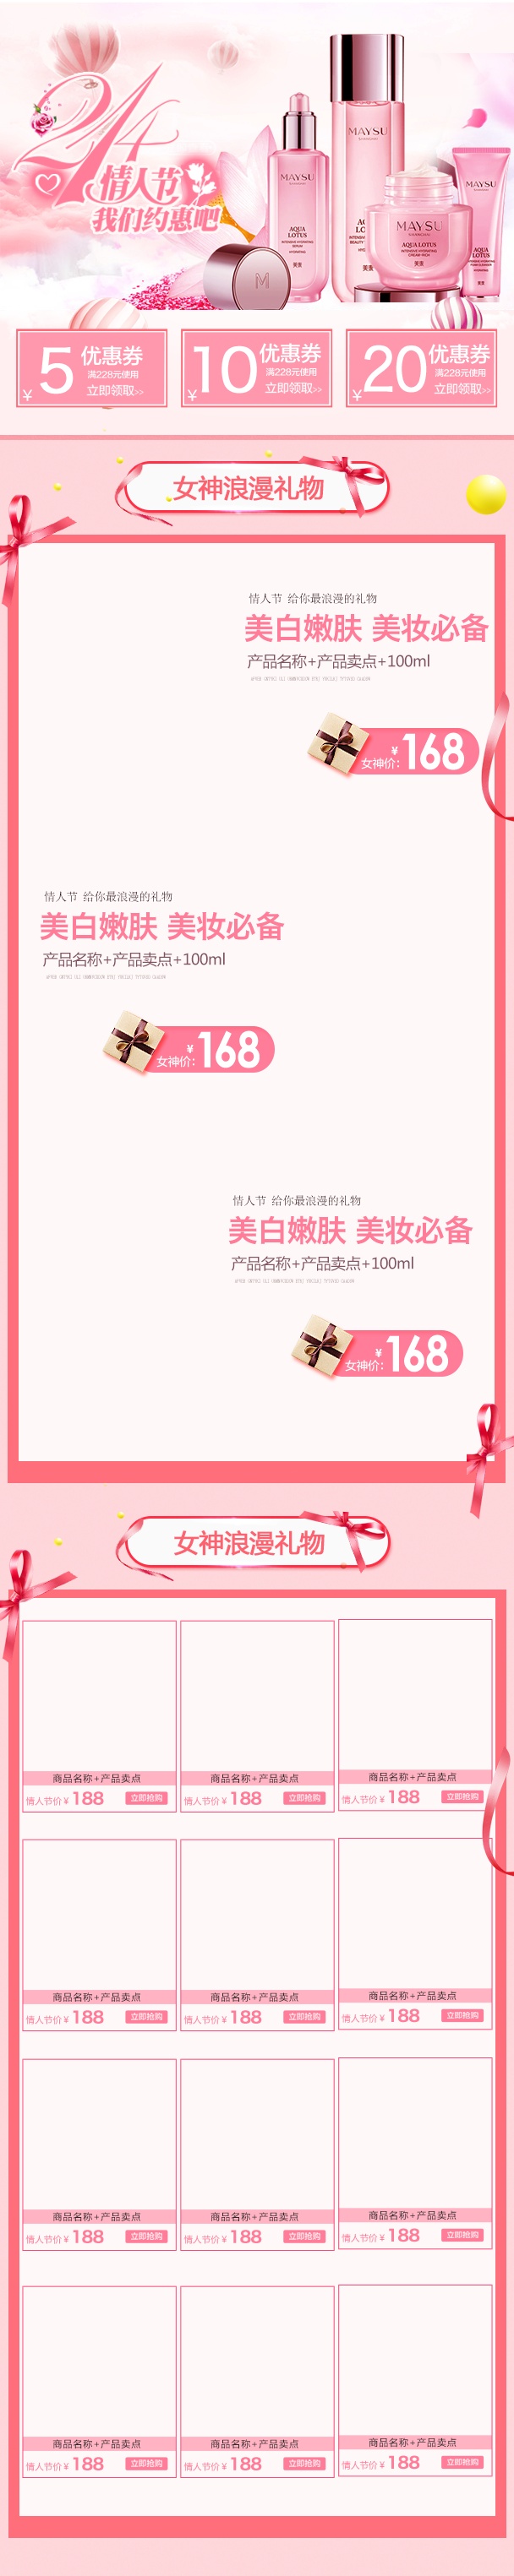 粉色梦幻风情人节化妆品手机端首页模版PSD